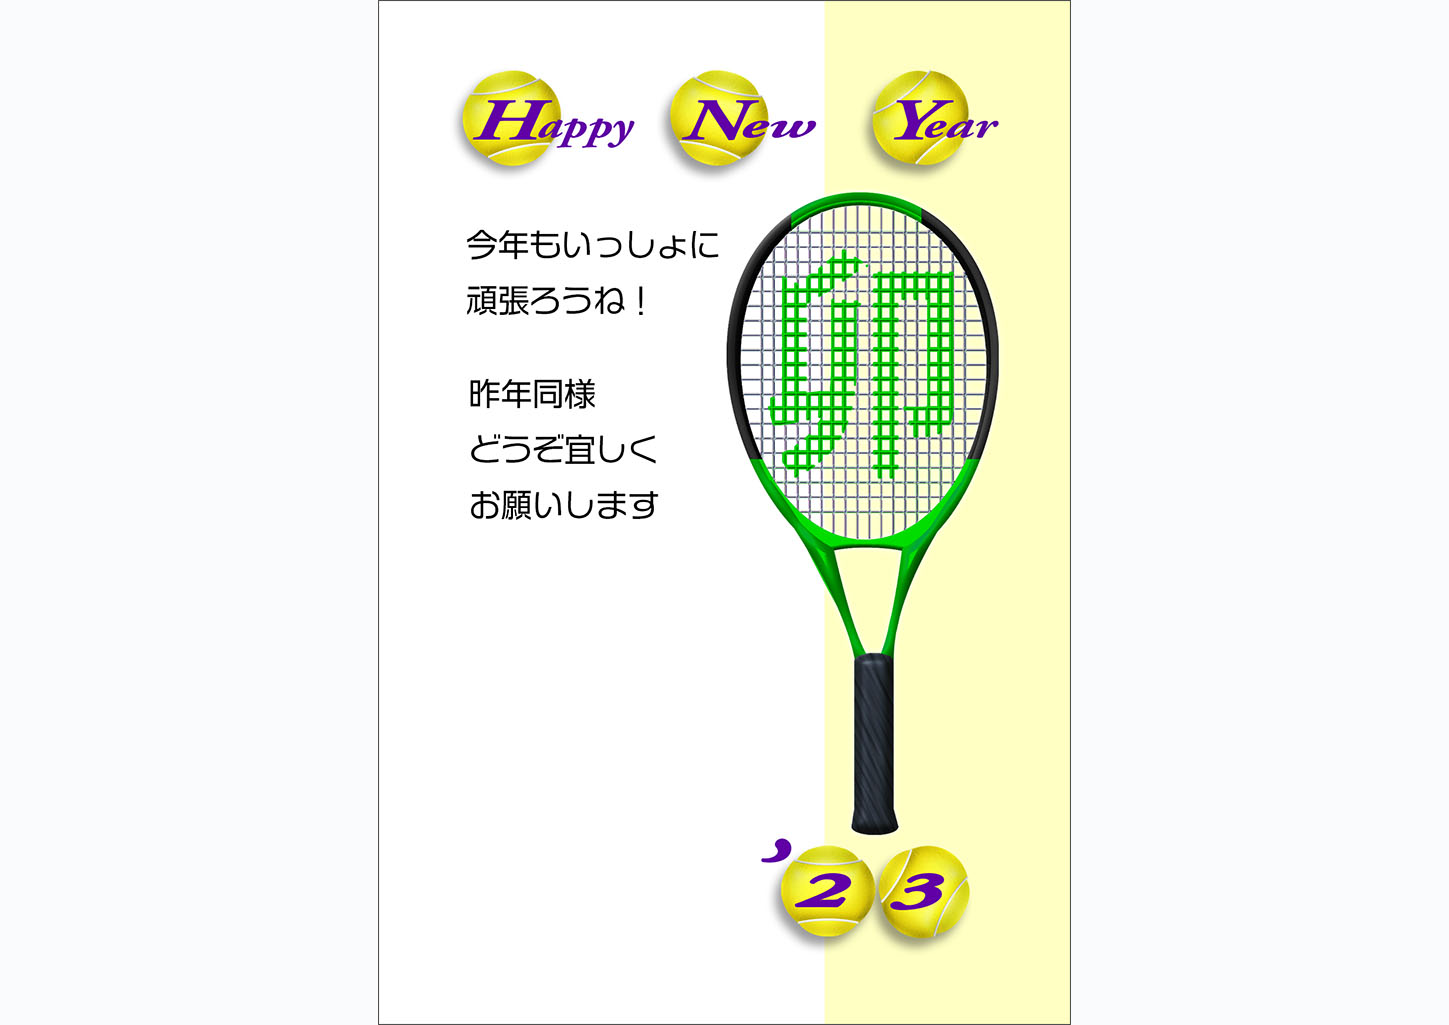 卯の緑テニスラケット年賀状テンプレート